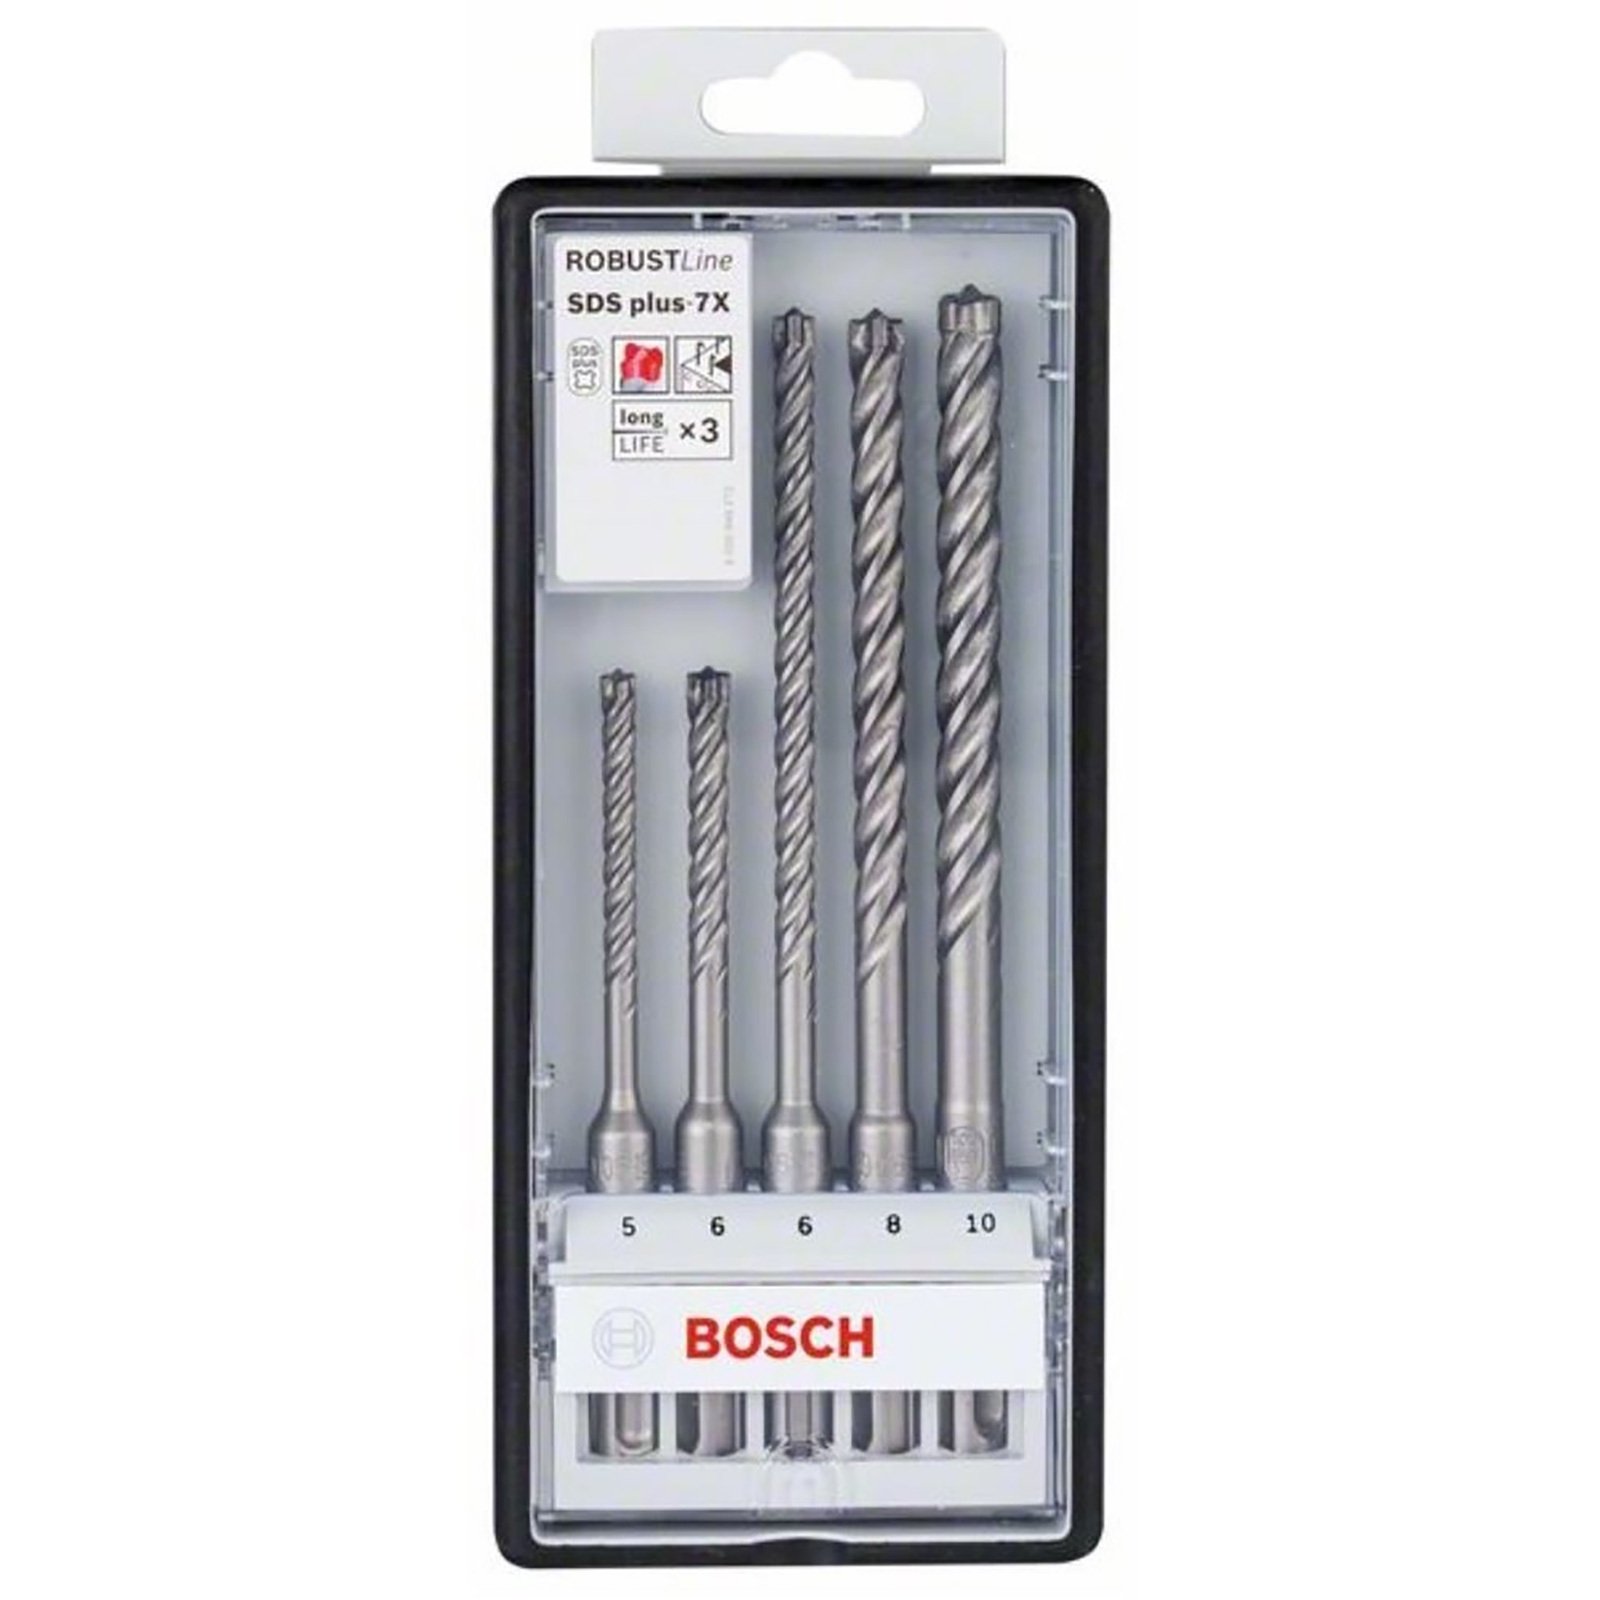 Bosch Hammerbohrer SDS-plus-7X-Set Robust Line 5tlg. 5 / 6 / 6 / 8 / 10 mm